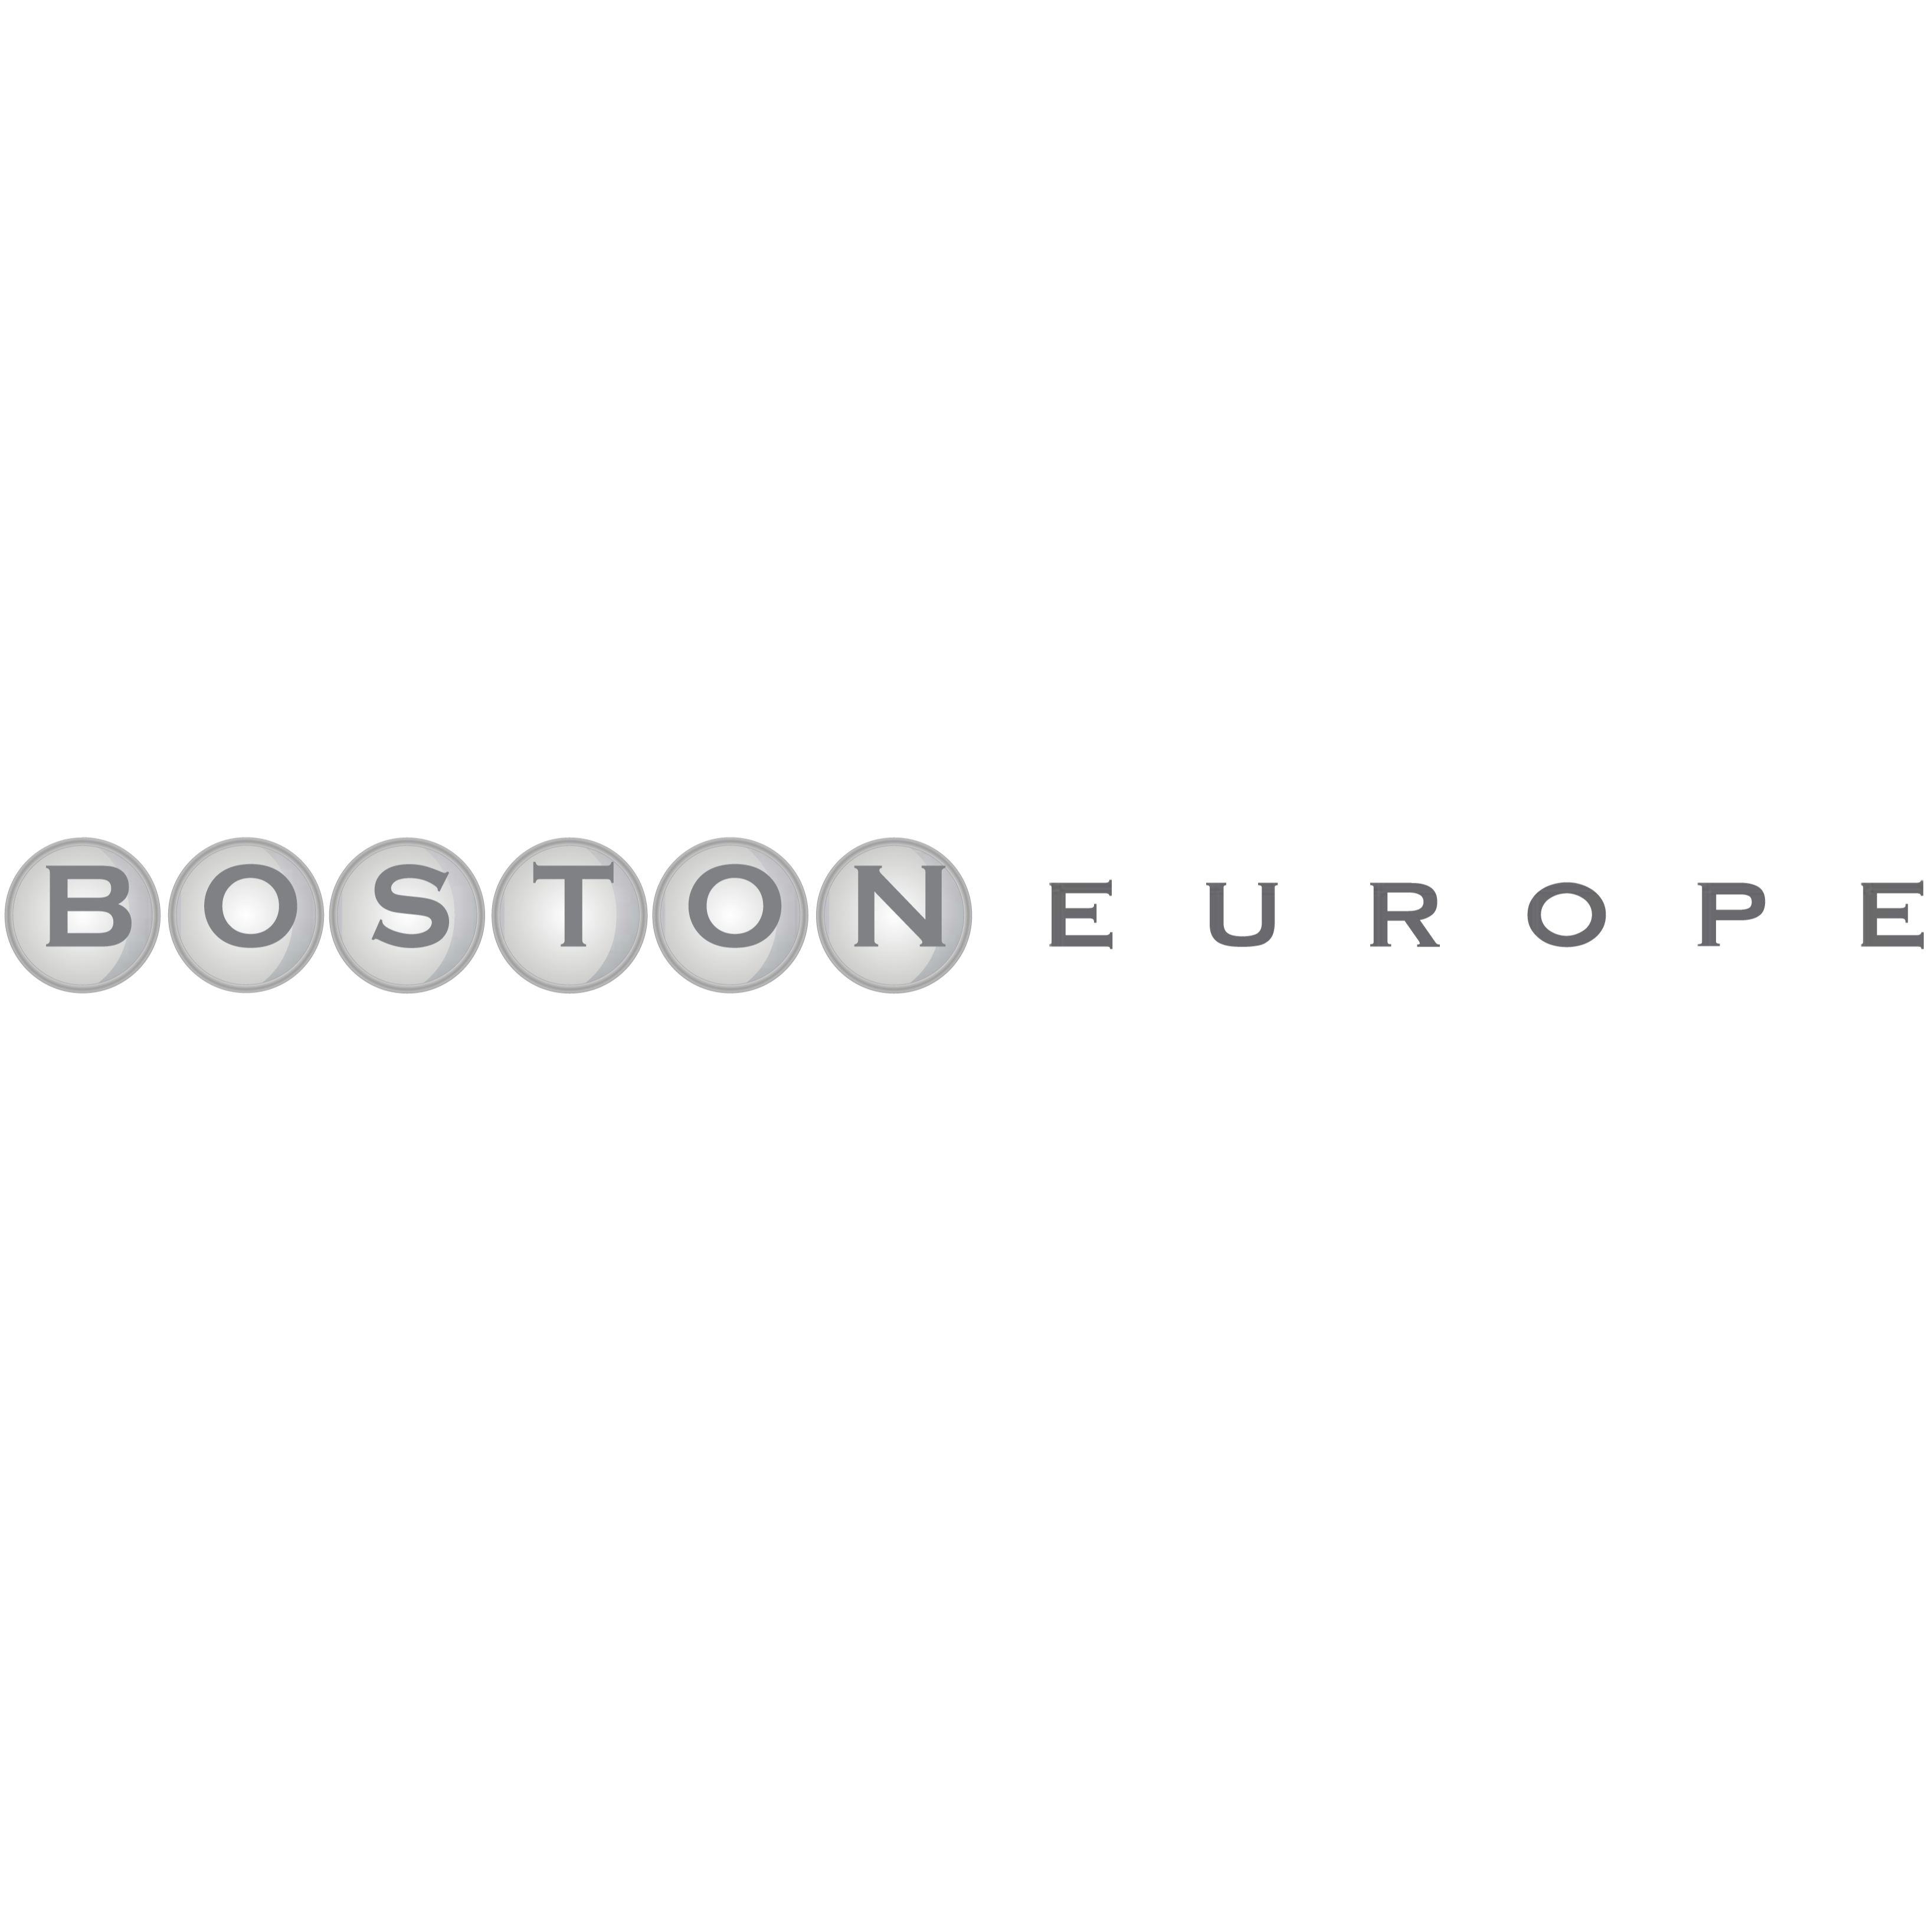 Boston Europe